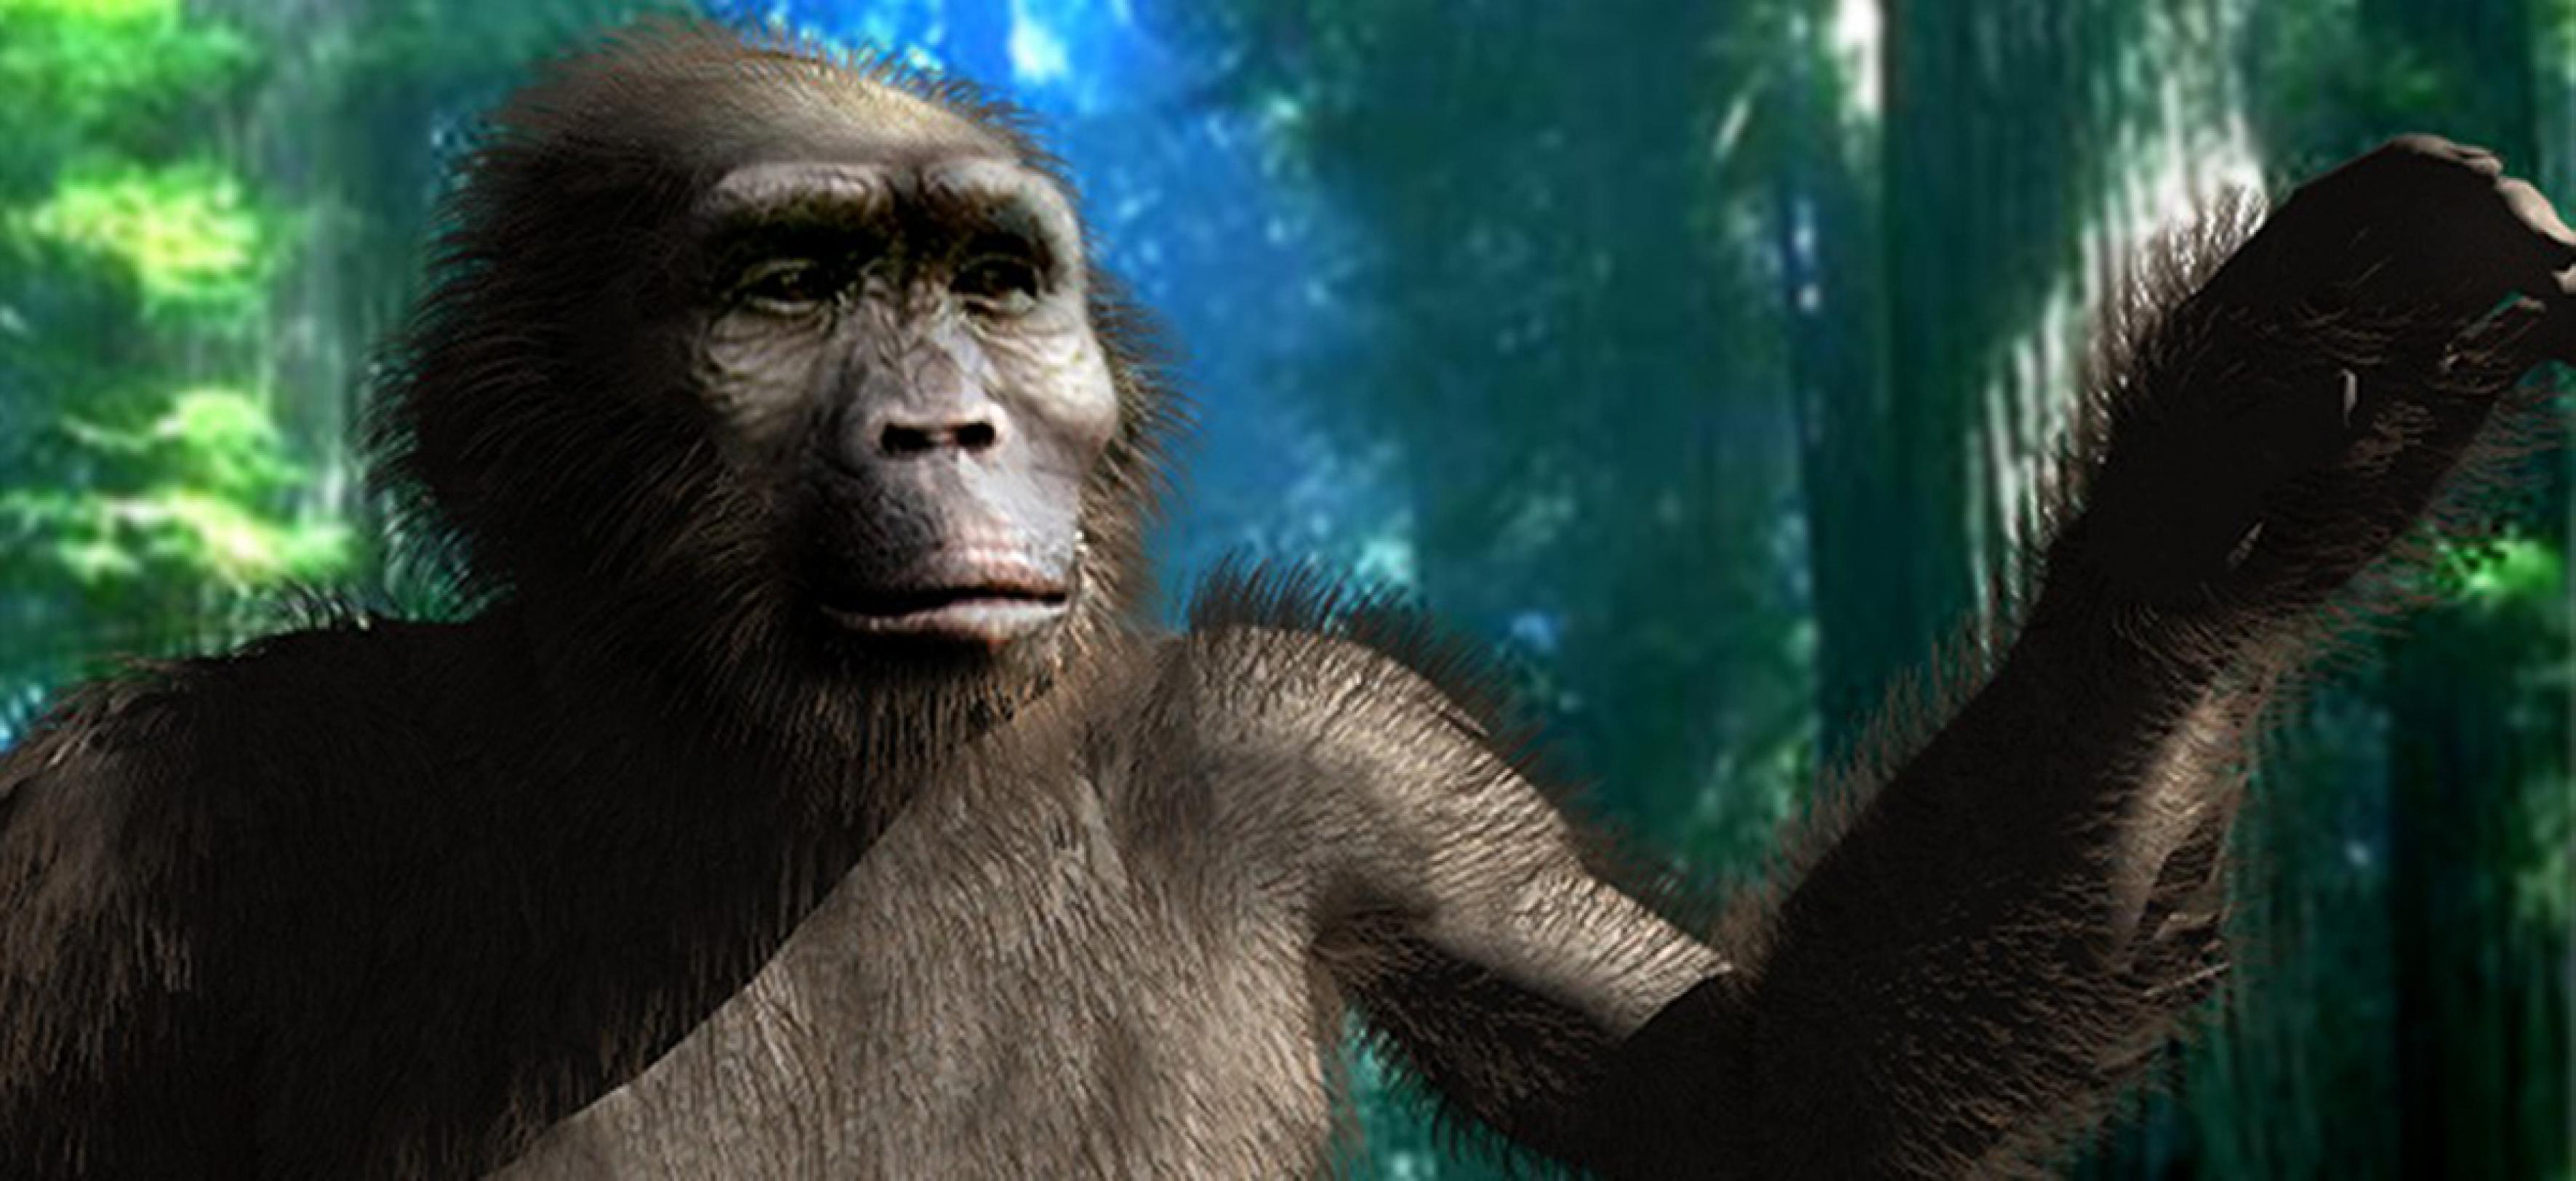 Die künstlerische Darstellung visualisiert, wie die Nussknackermenschen ausgesehen haben könnten – ihr Körper ähnelte noch weitgehend einem Affen, doch sie liefen aufrecht auf zwei Beinen.